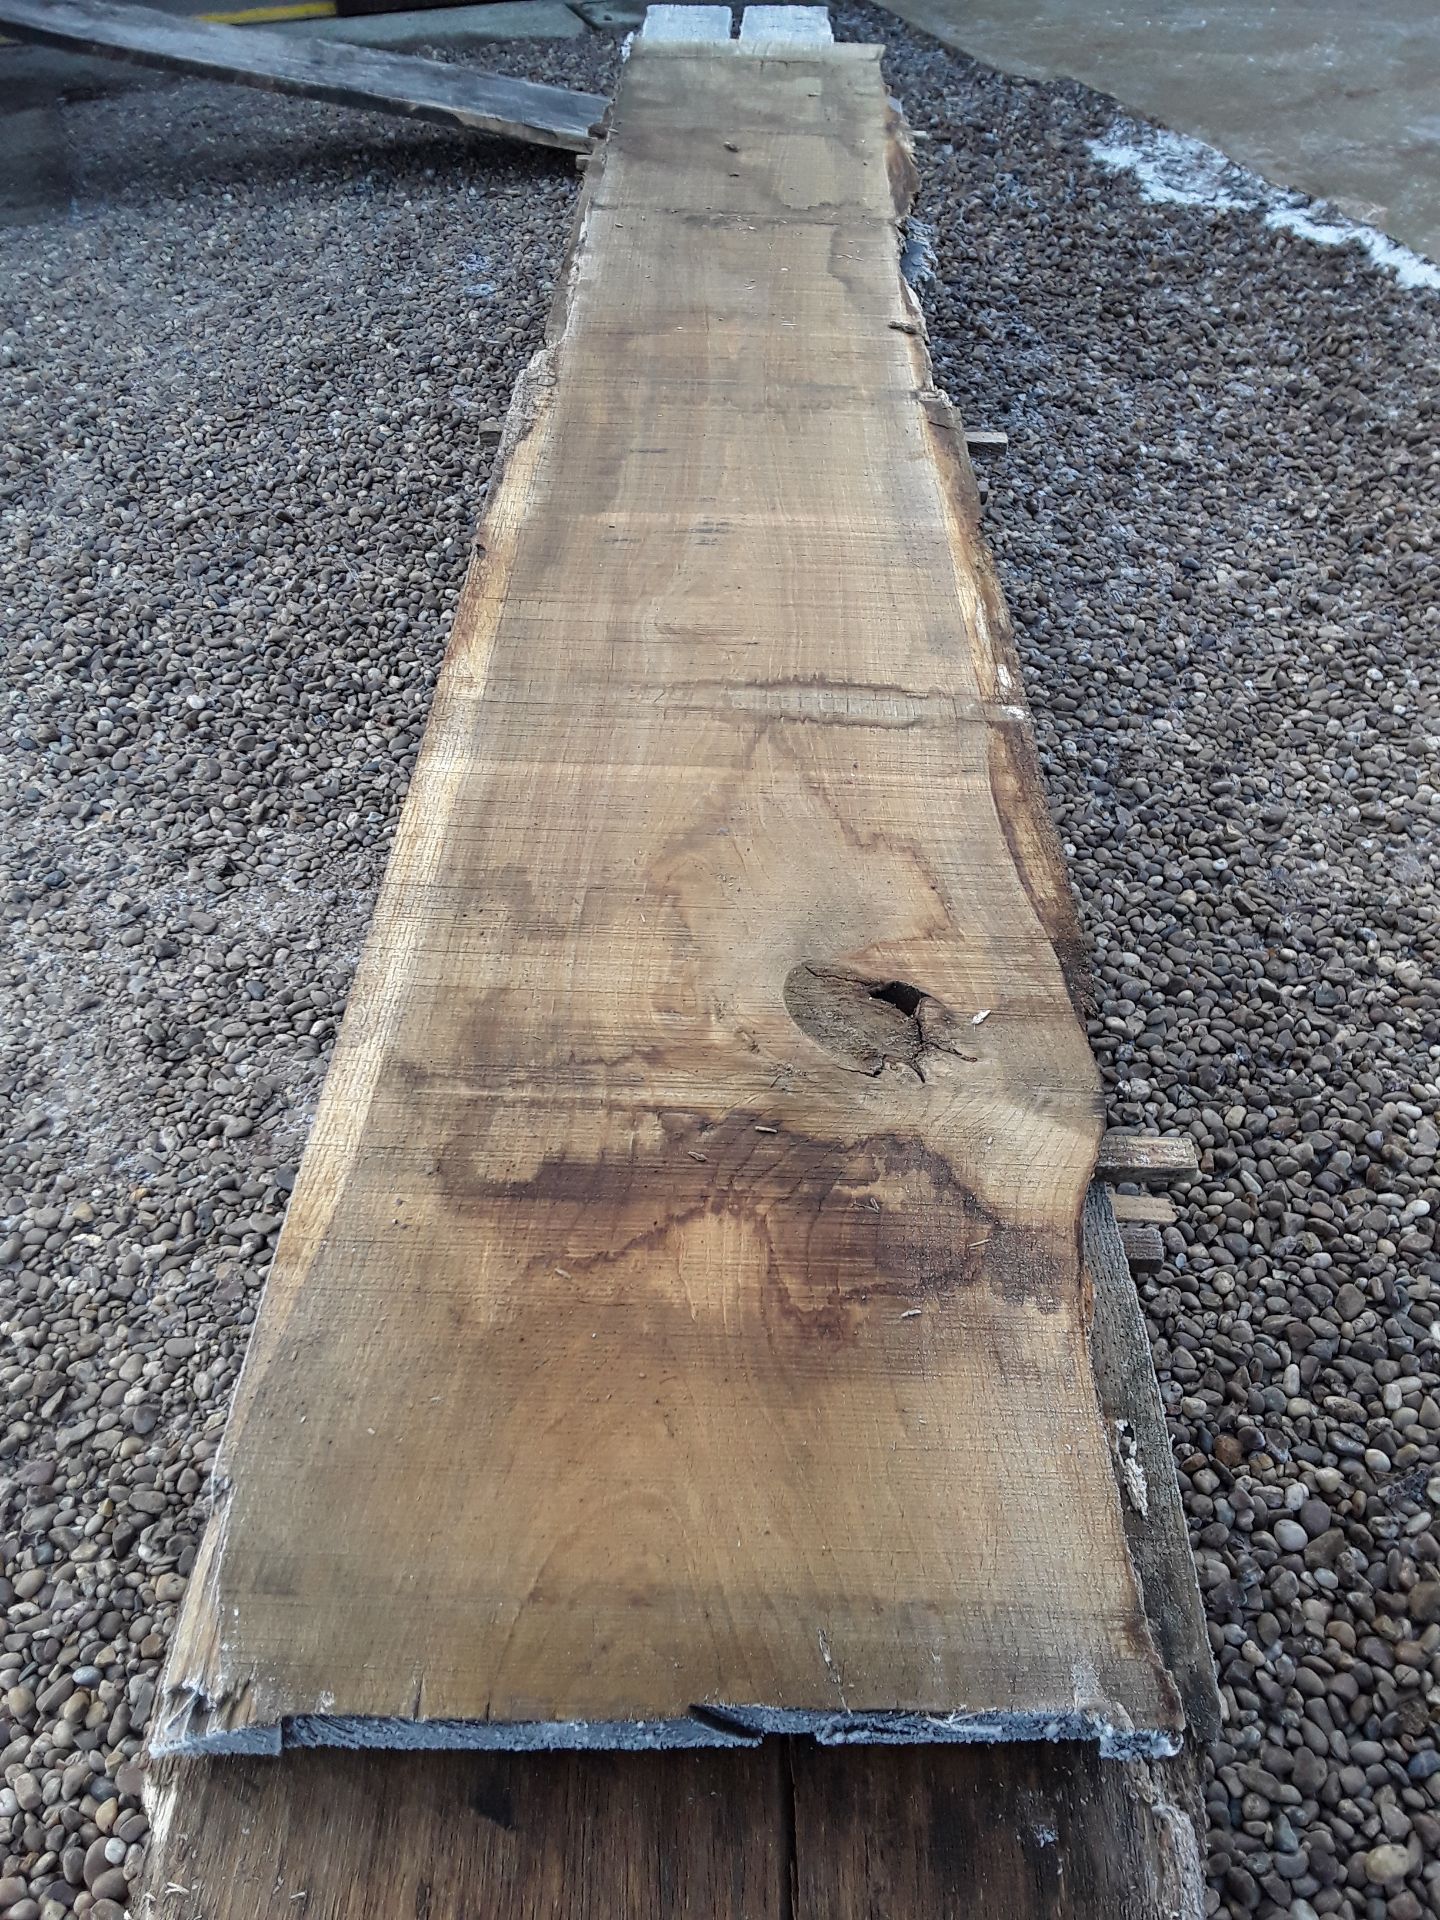 10 x Hardwood Timber Sawn Seasoned English Oak Waney Edge / Live Edge Boards/ Planks - Image 8 of 15